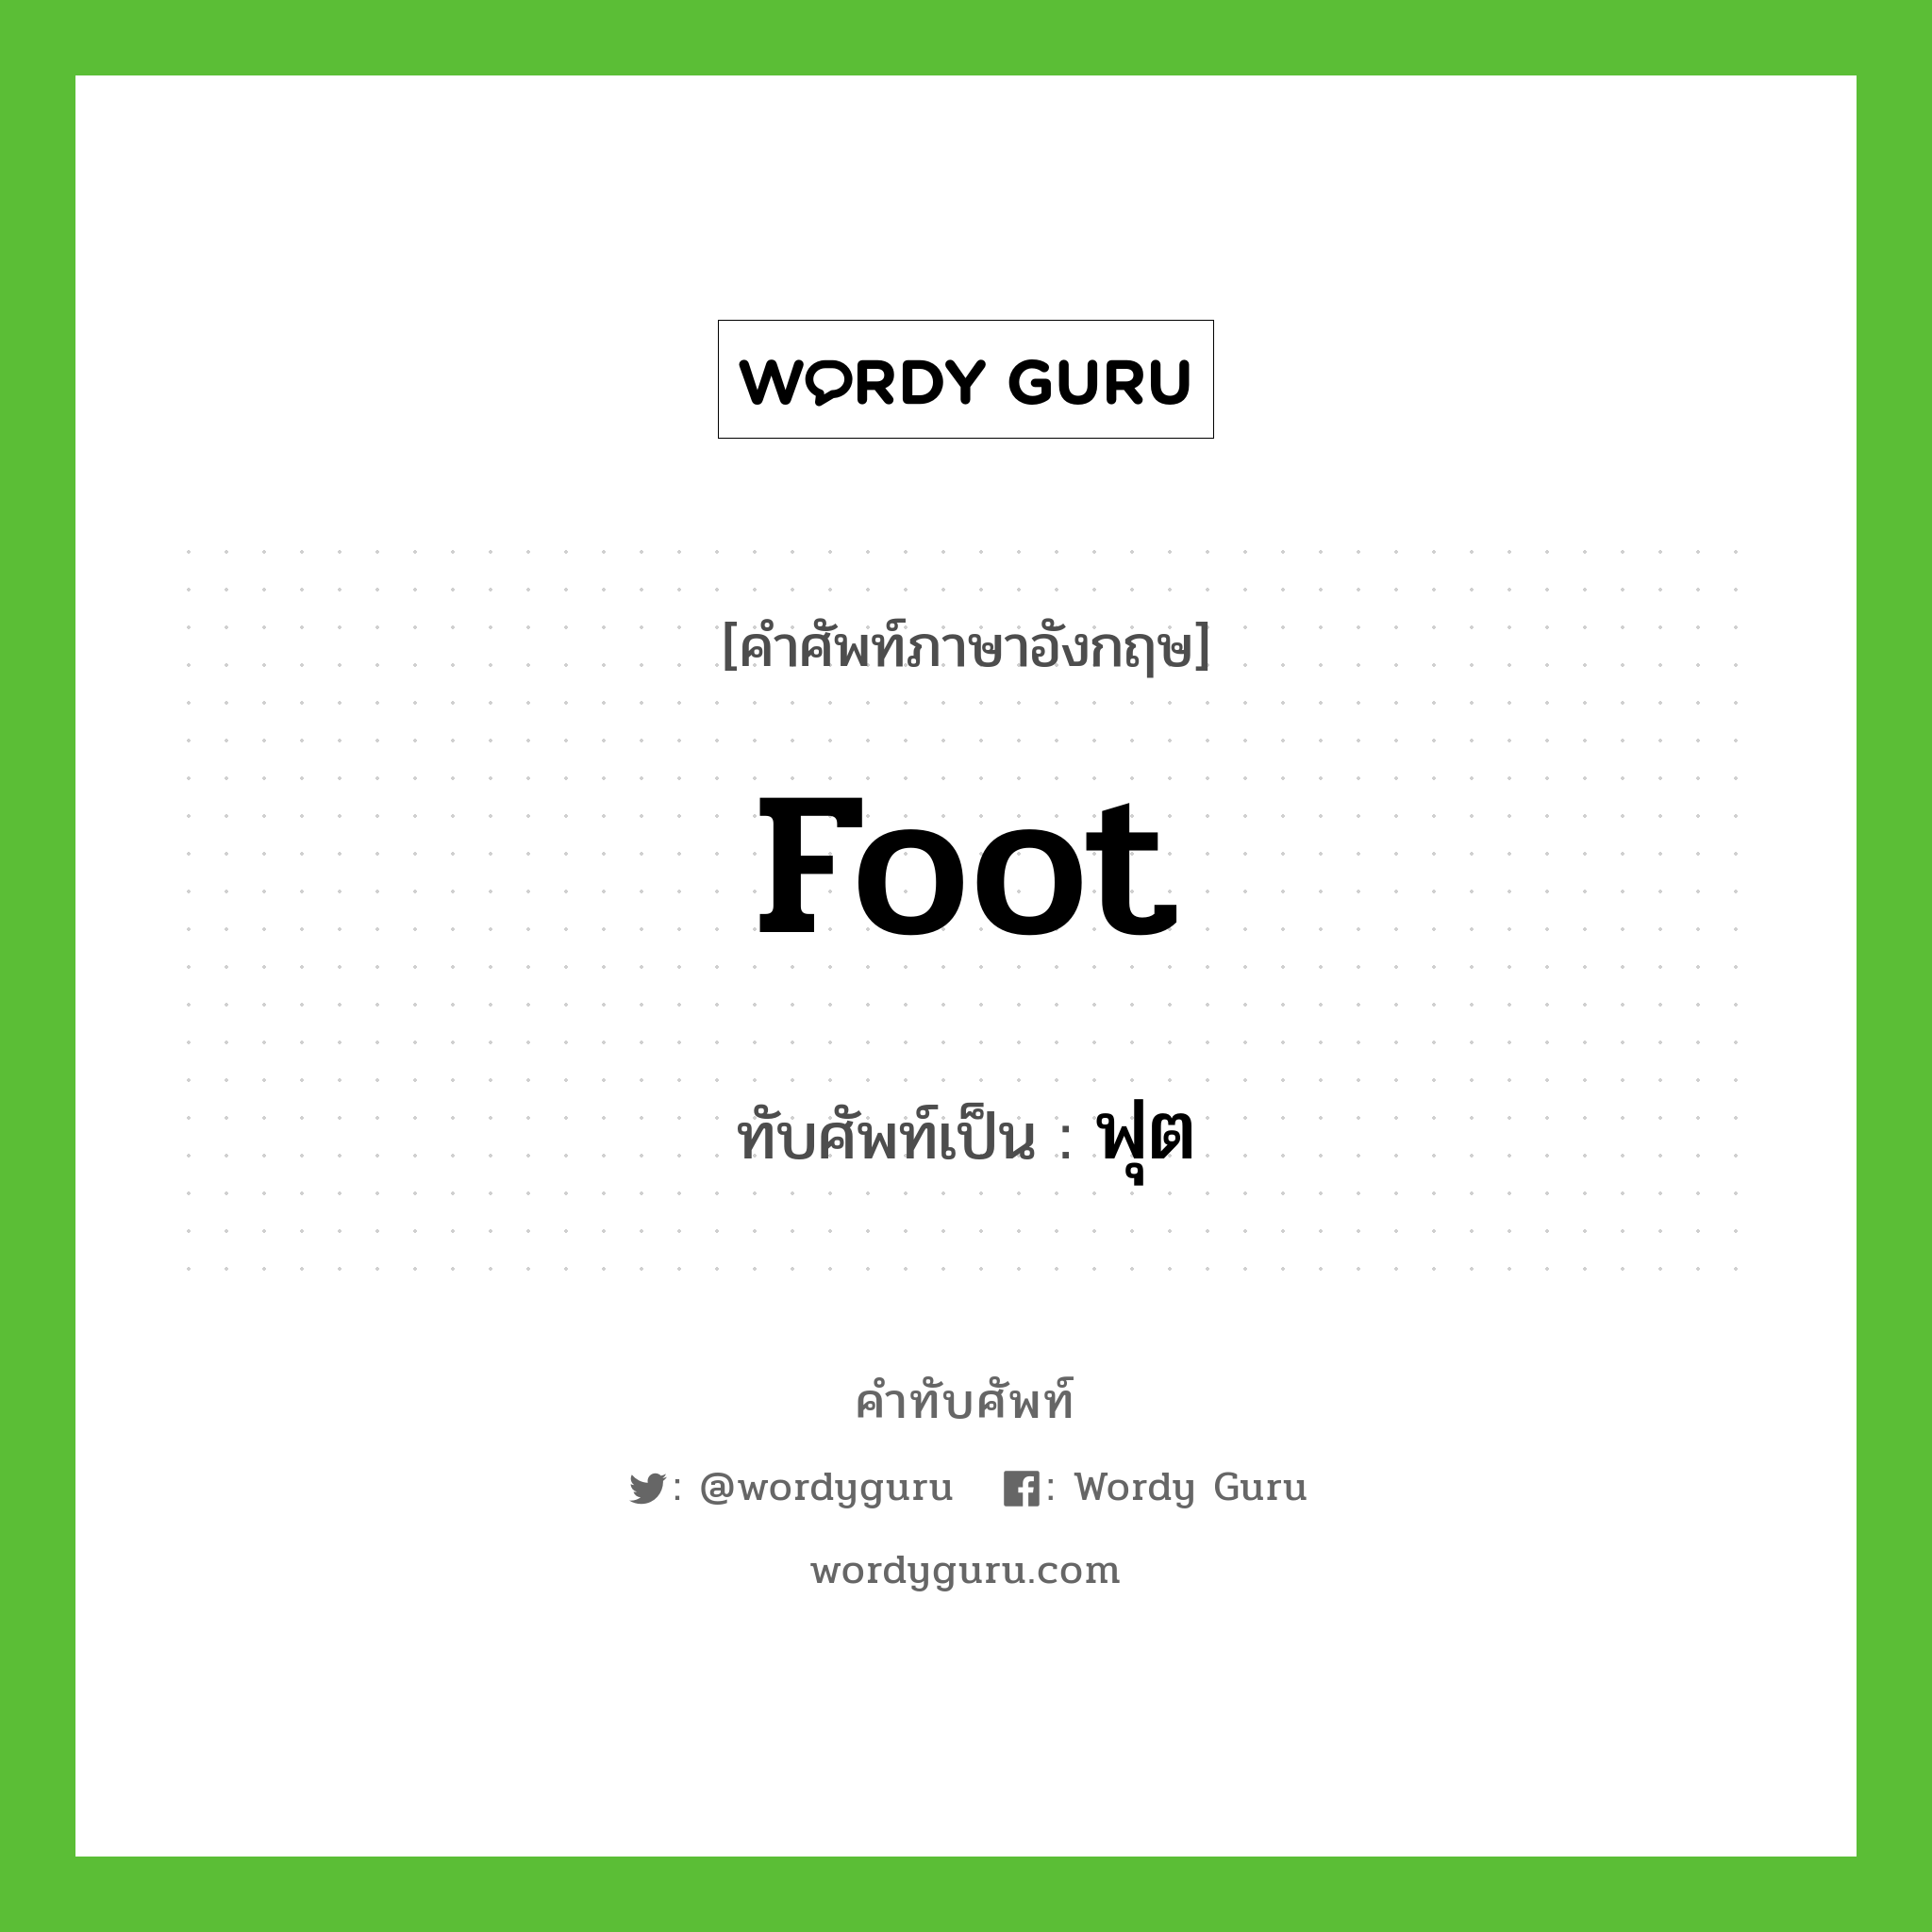 foot เขียนเป็นคำไทยว่าอะไร?, คำศัพท์ภาษาอังกฤษ foot ทับศัพท์เป็น ฟุต